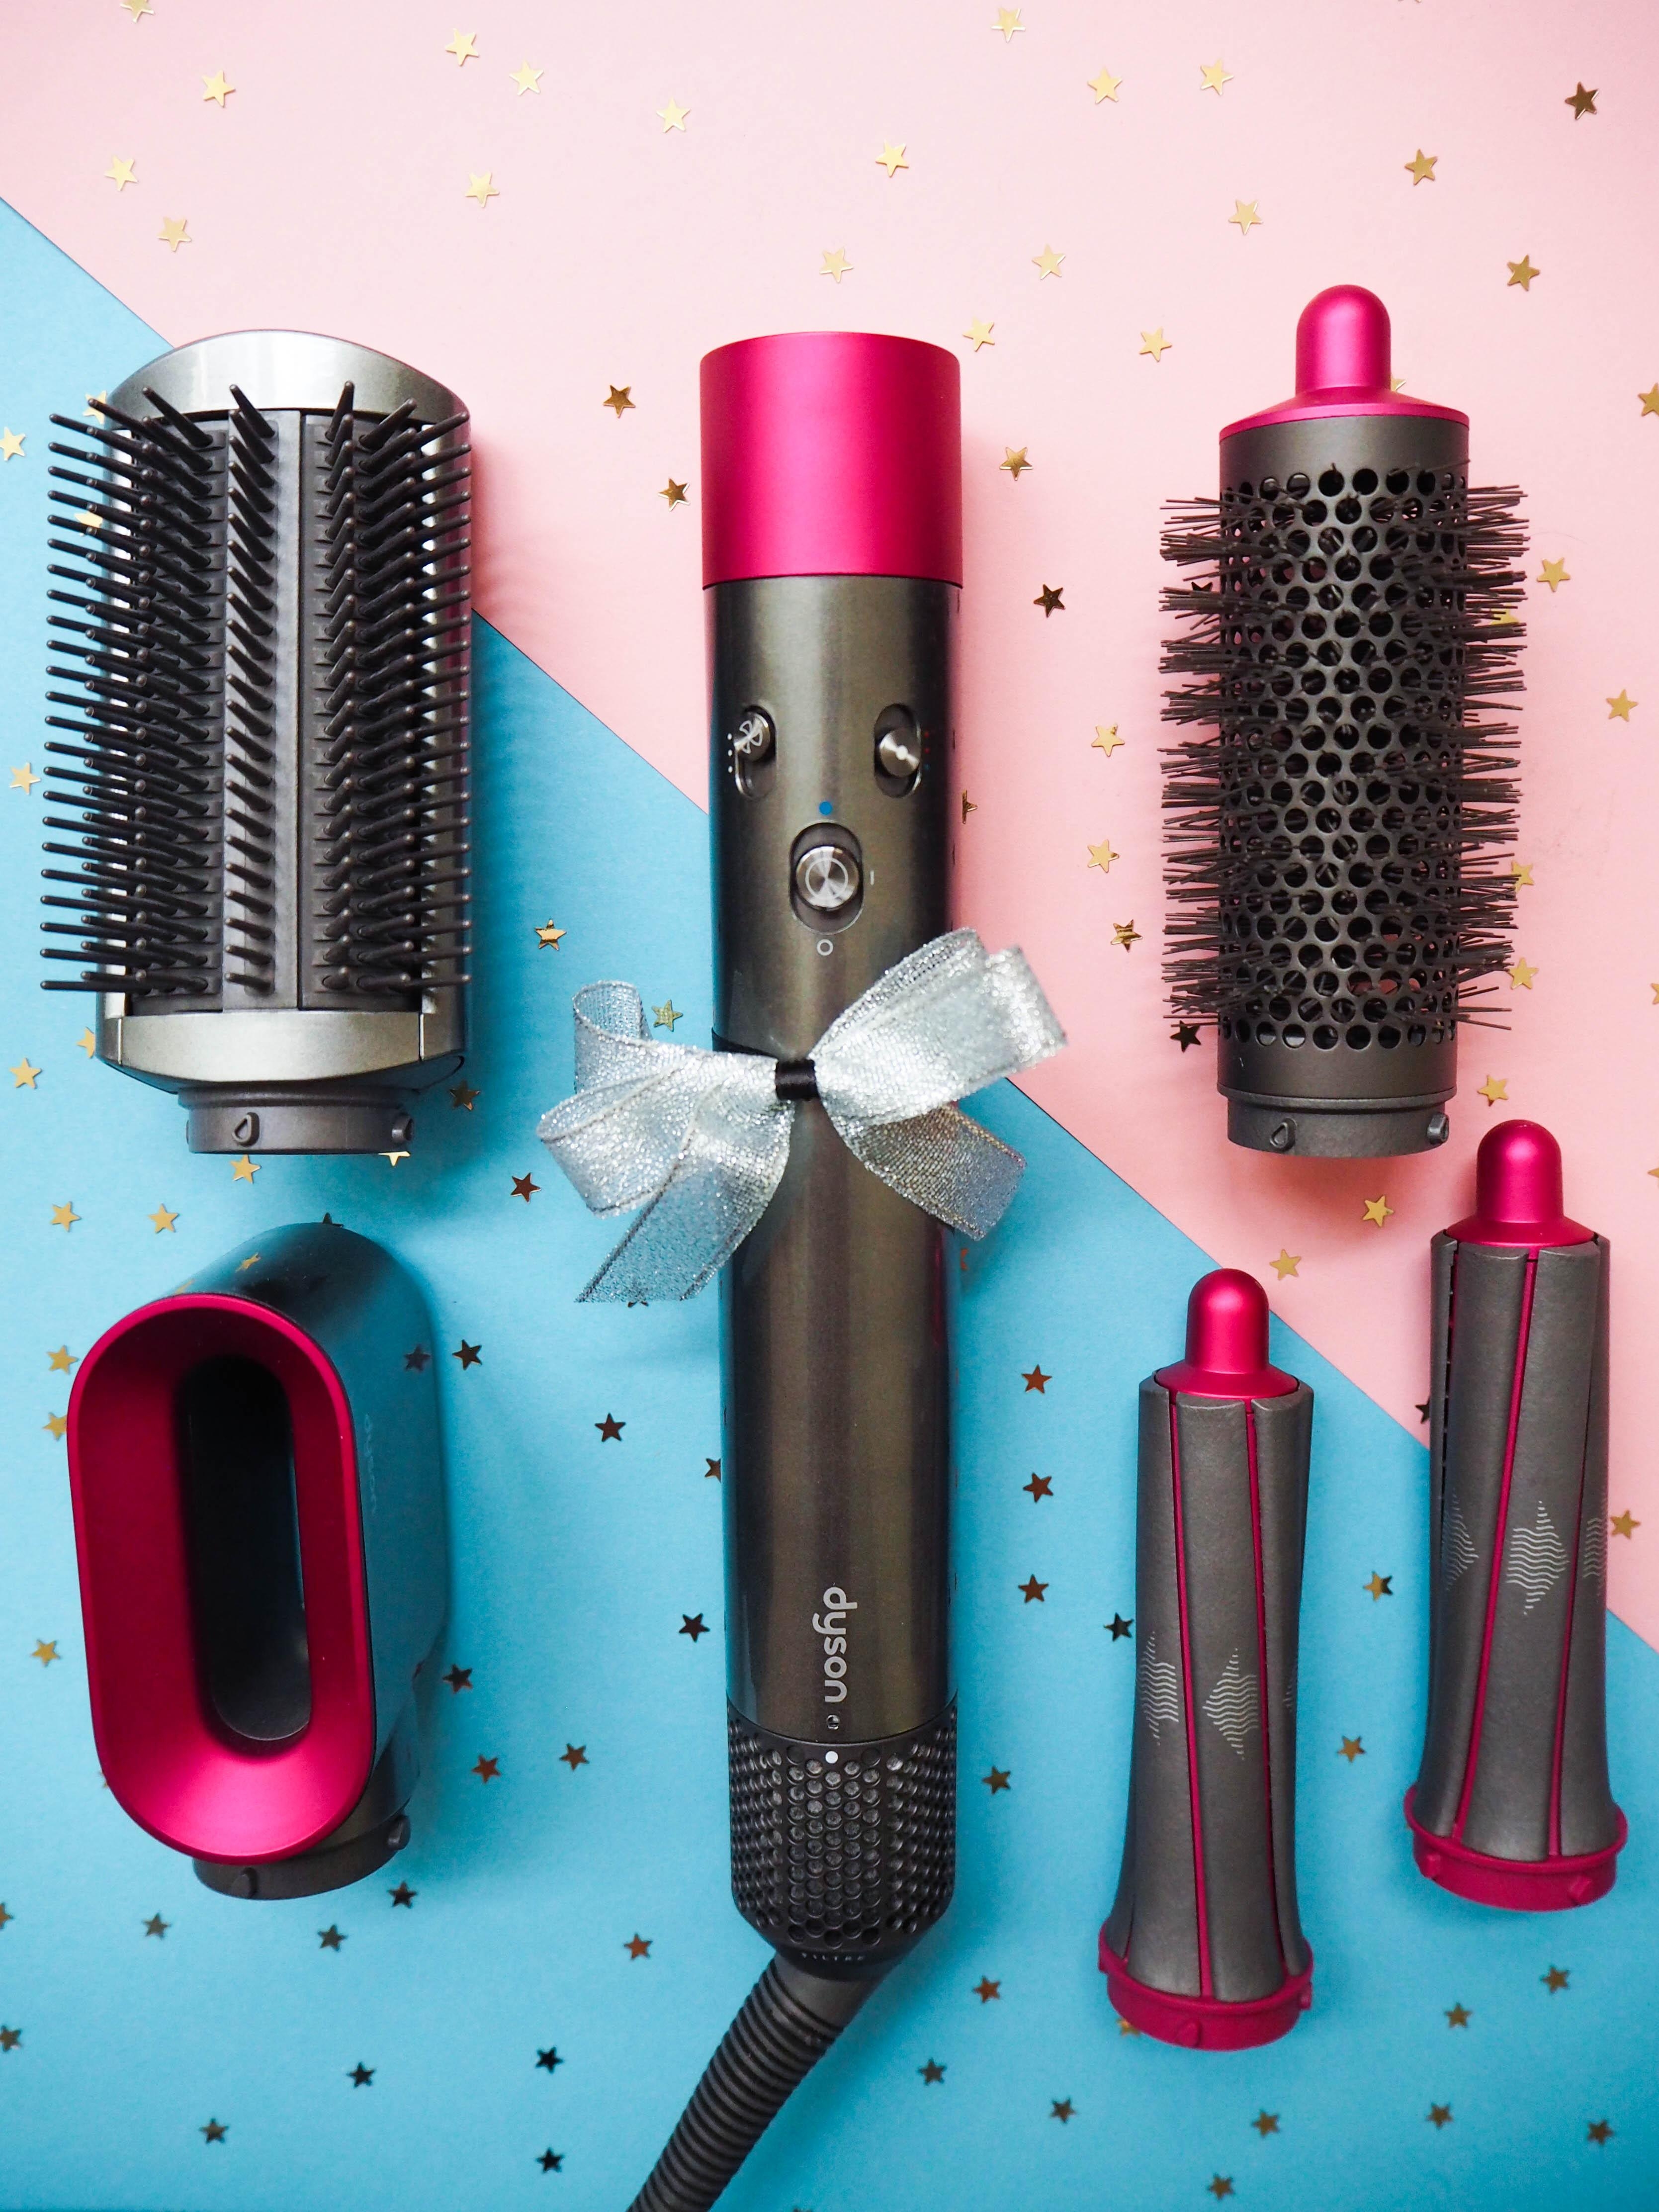 Ab sofort brauchen wir mit dem Dyson Air Wrap nur noch Gerät für alle Haar-Styles! #beautytools #qvc #dyson